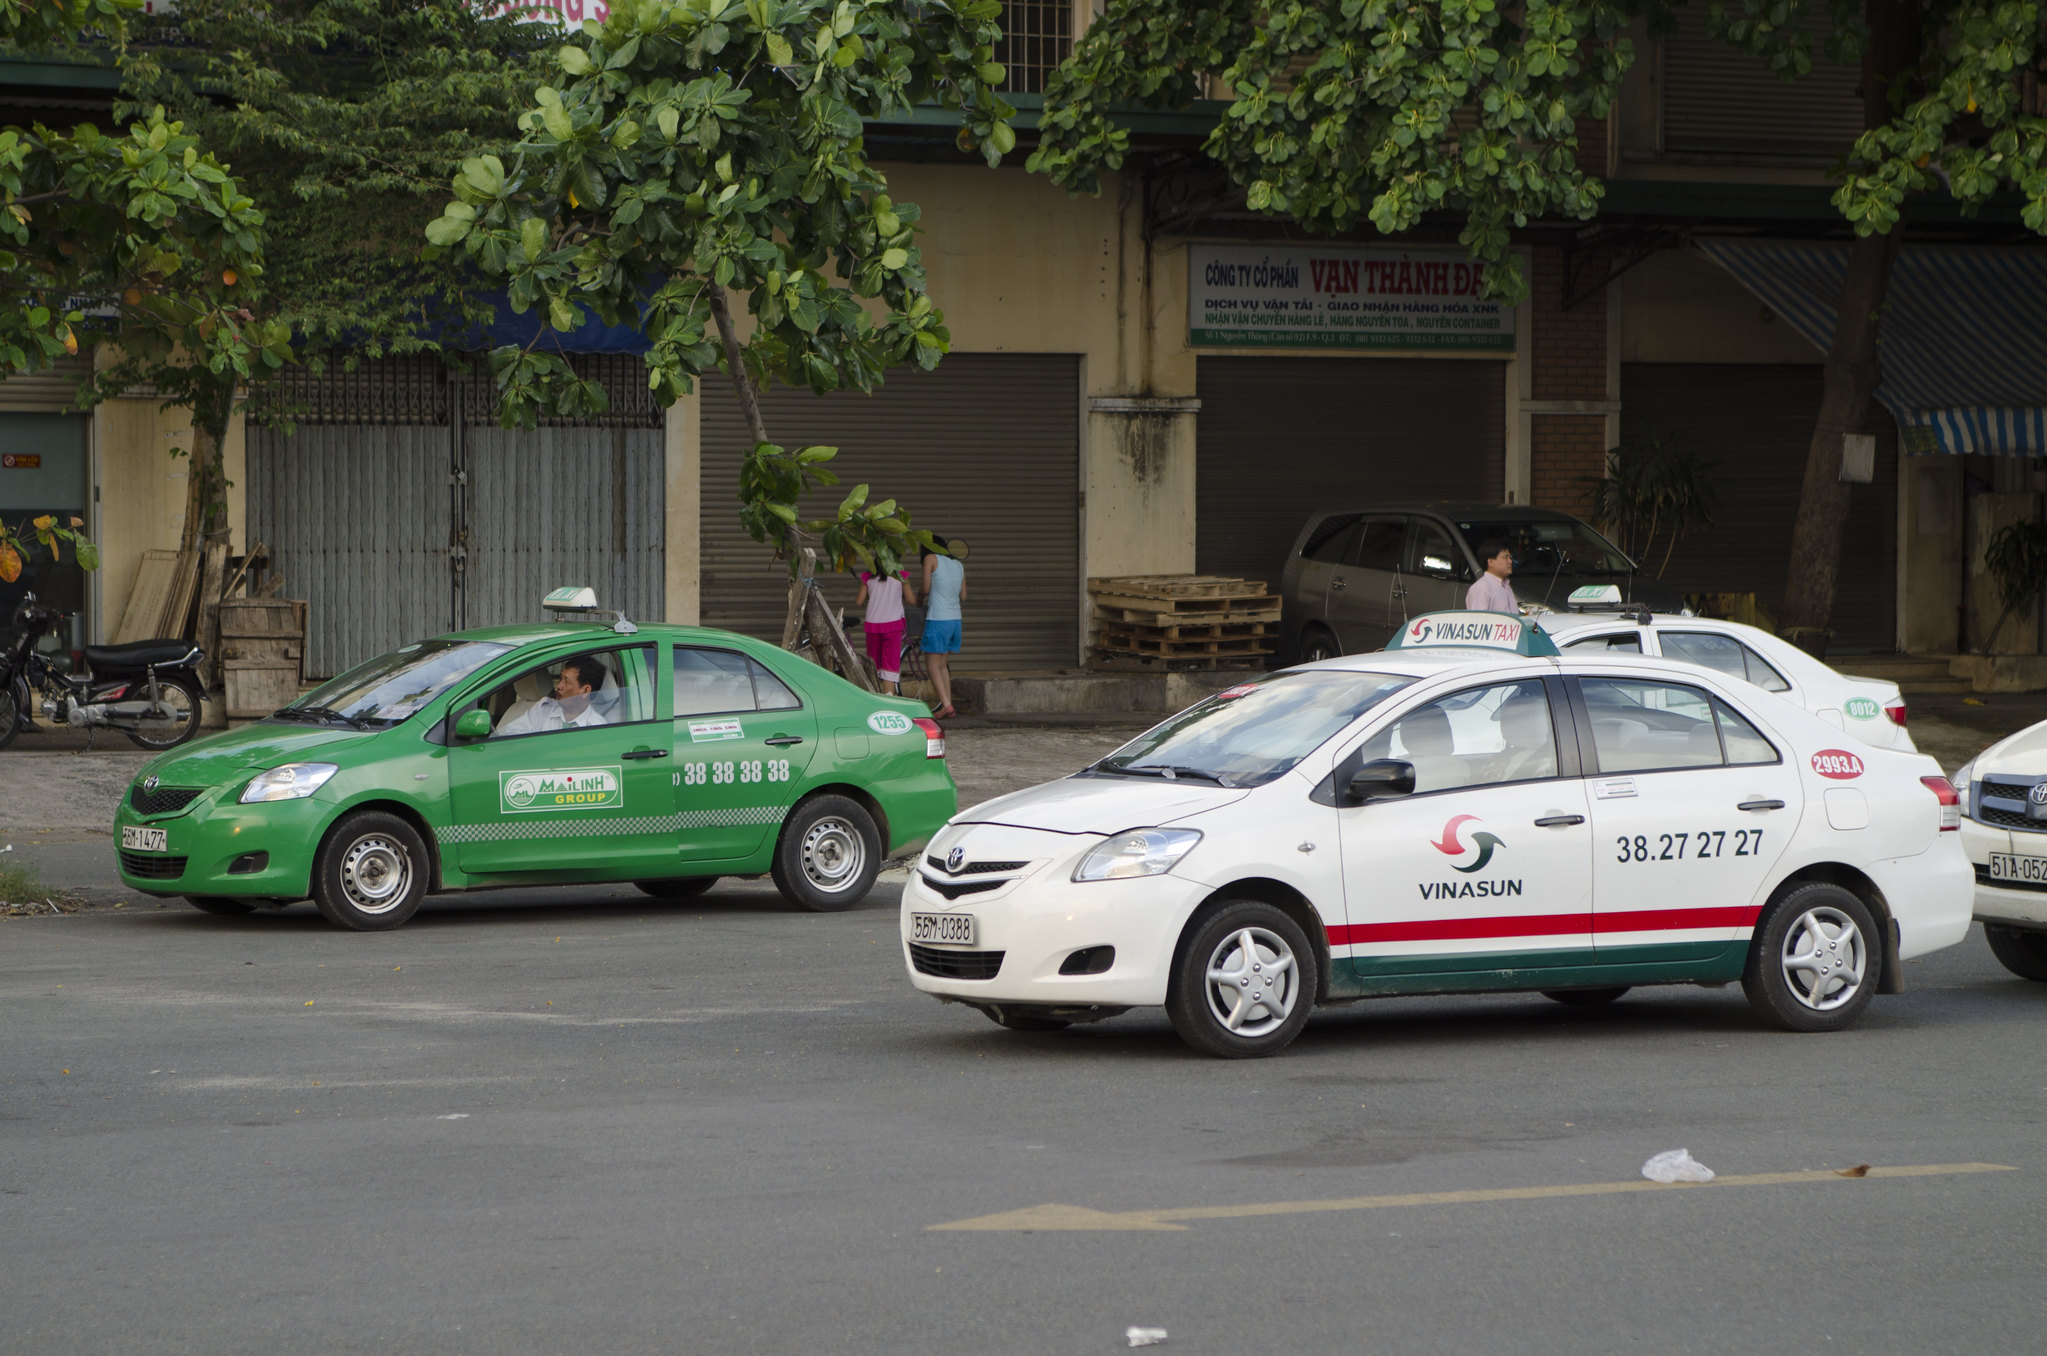 taxis in vietnam - cost of travel in vietnam